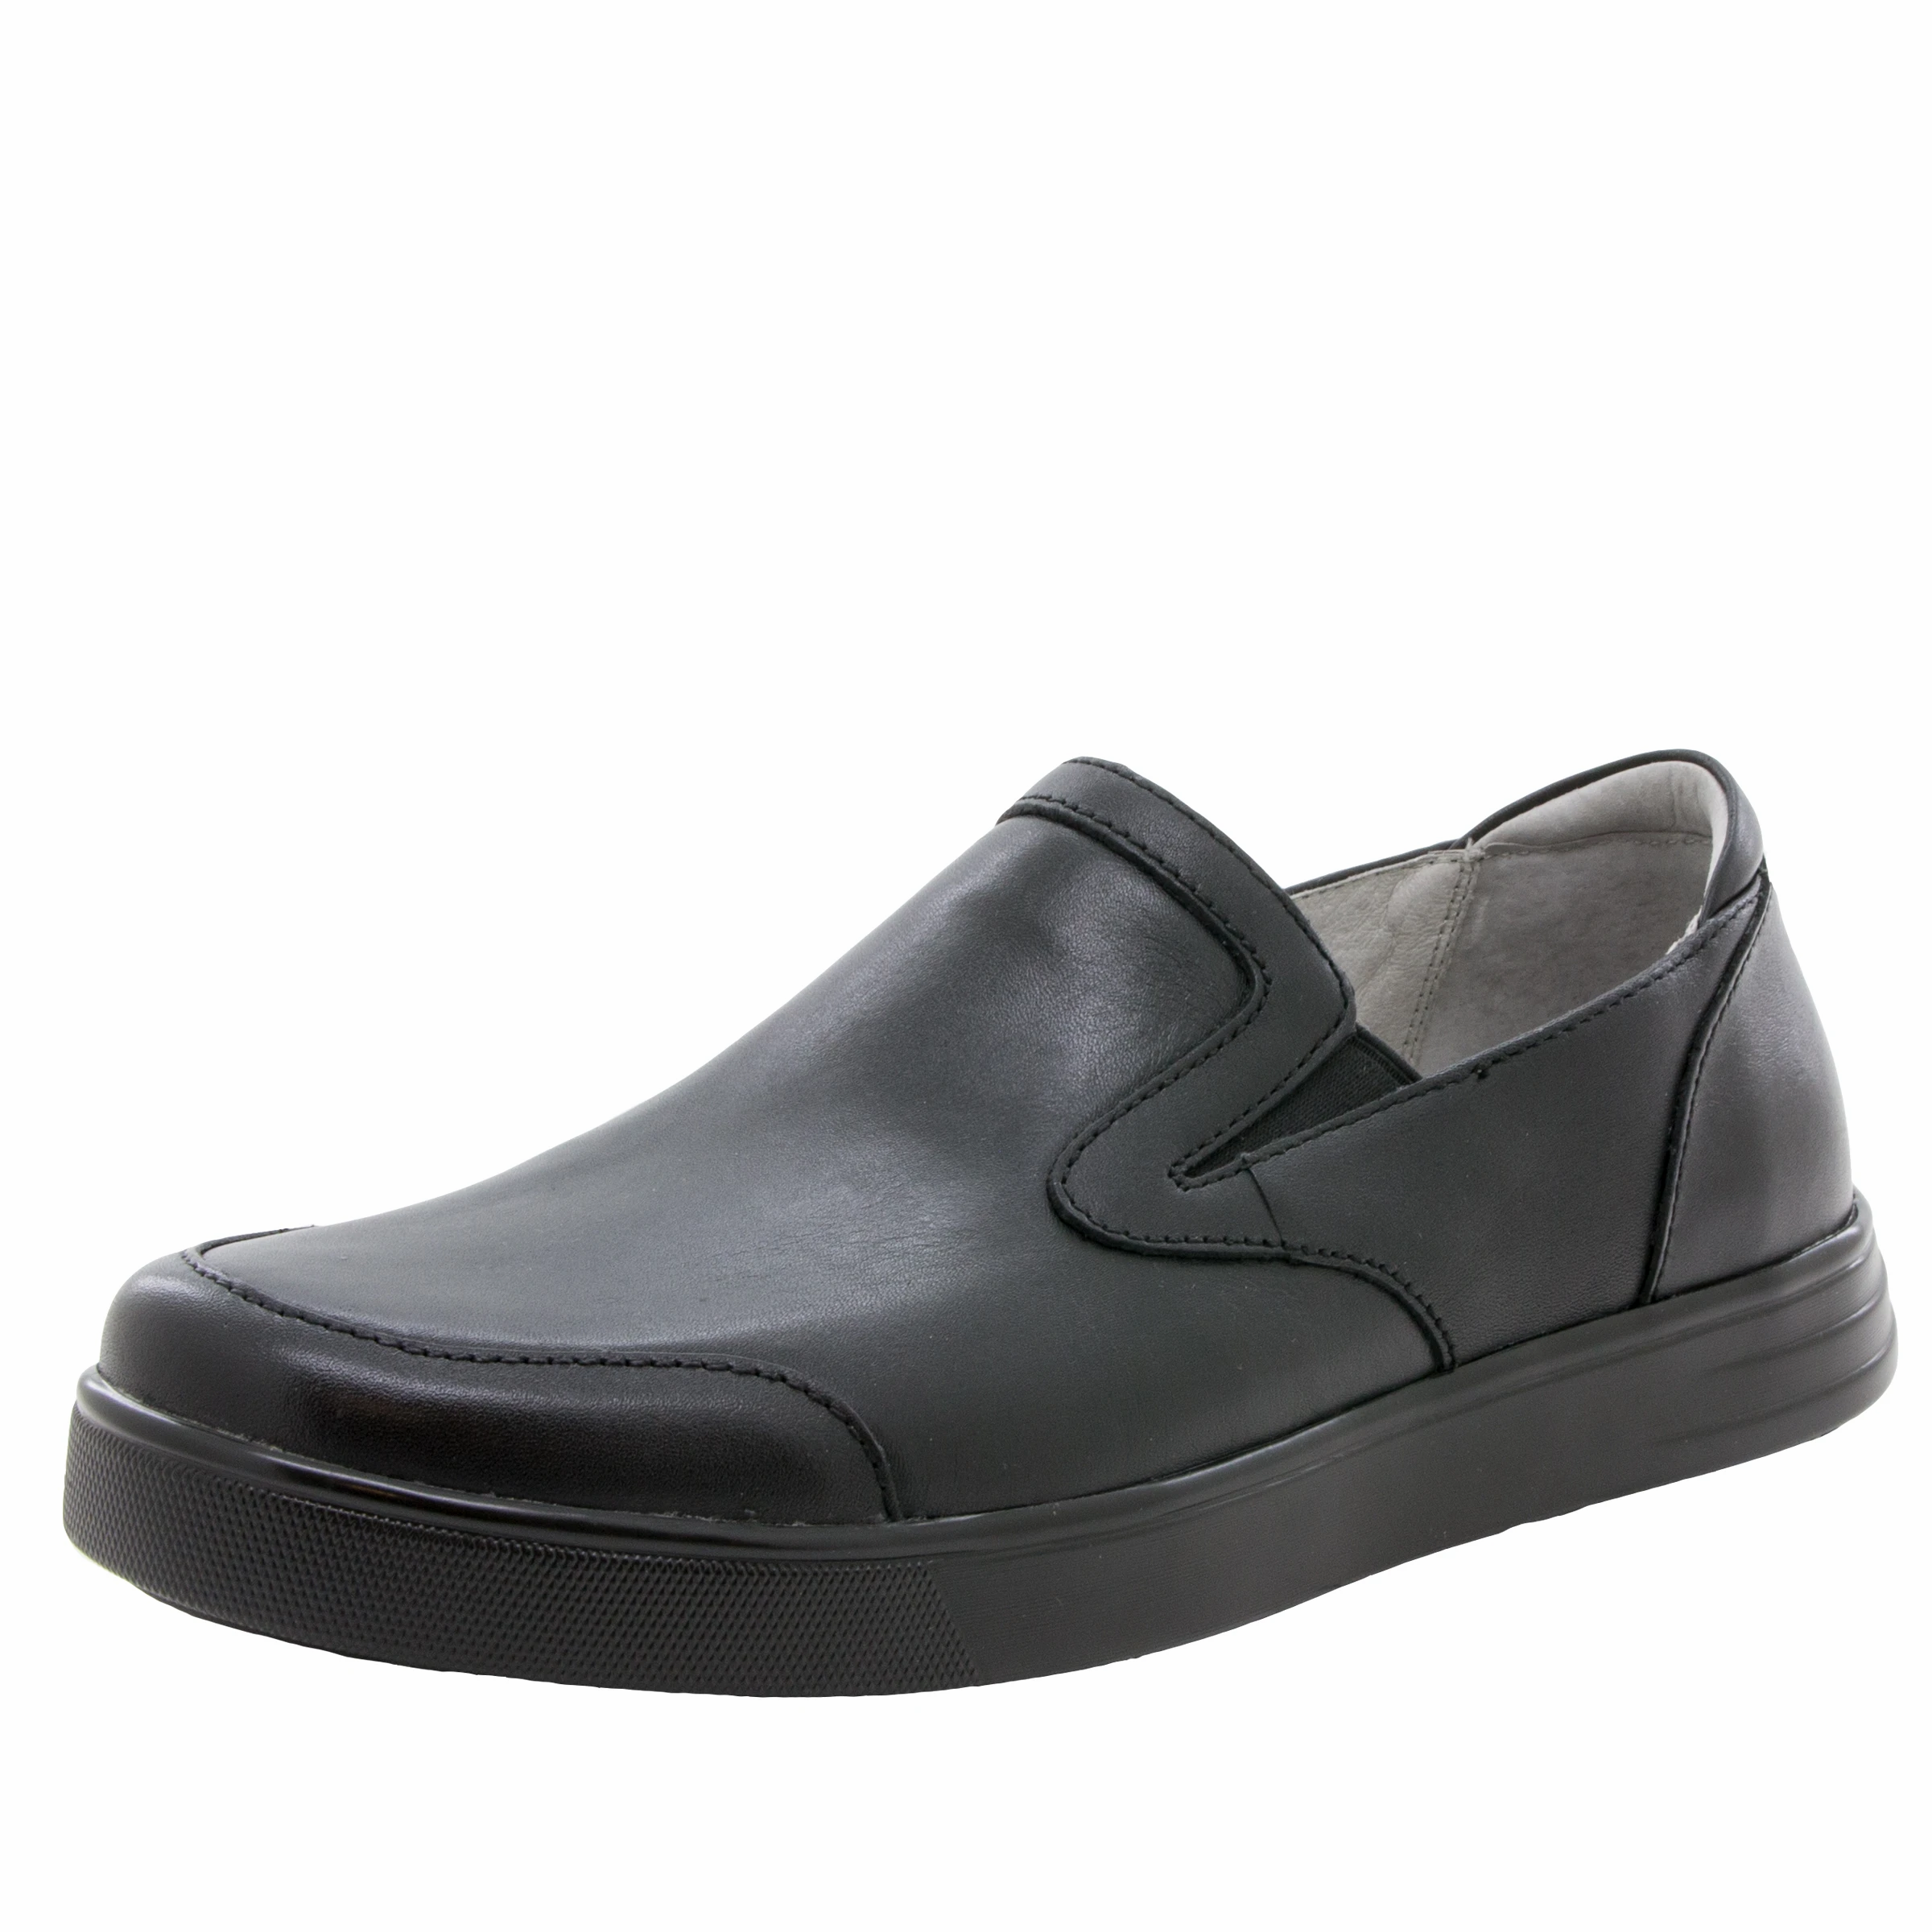 Alegria Men's Bender Casual Shoes Black Tumbled